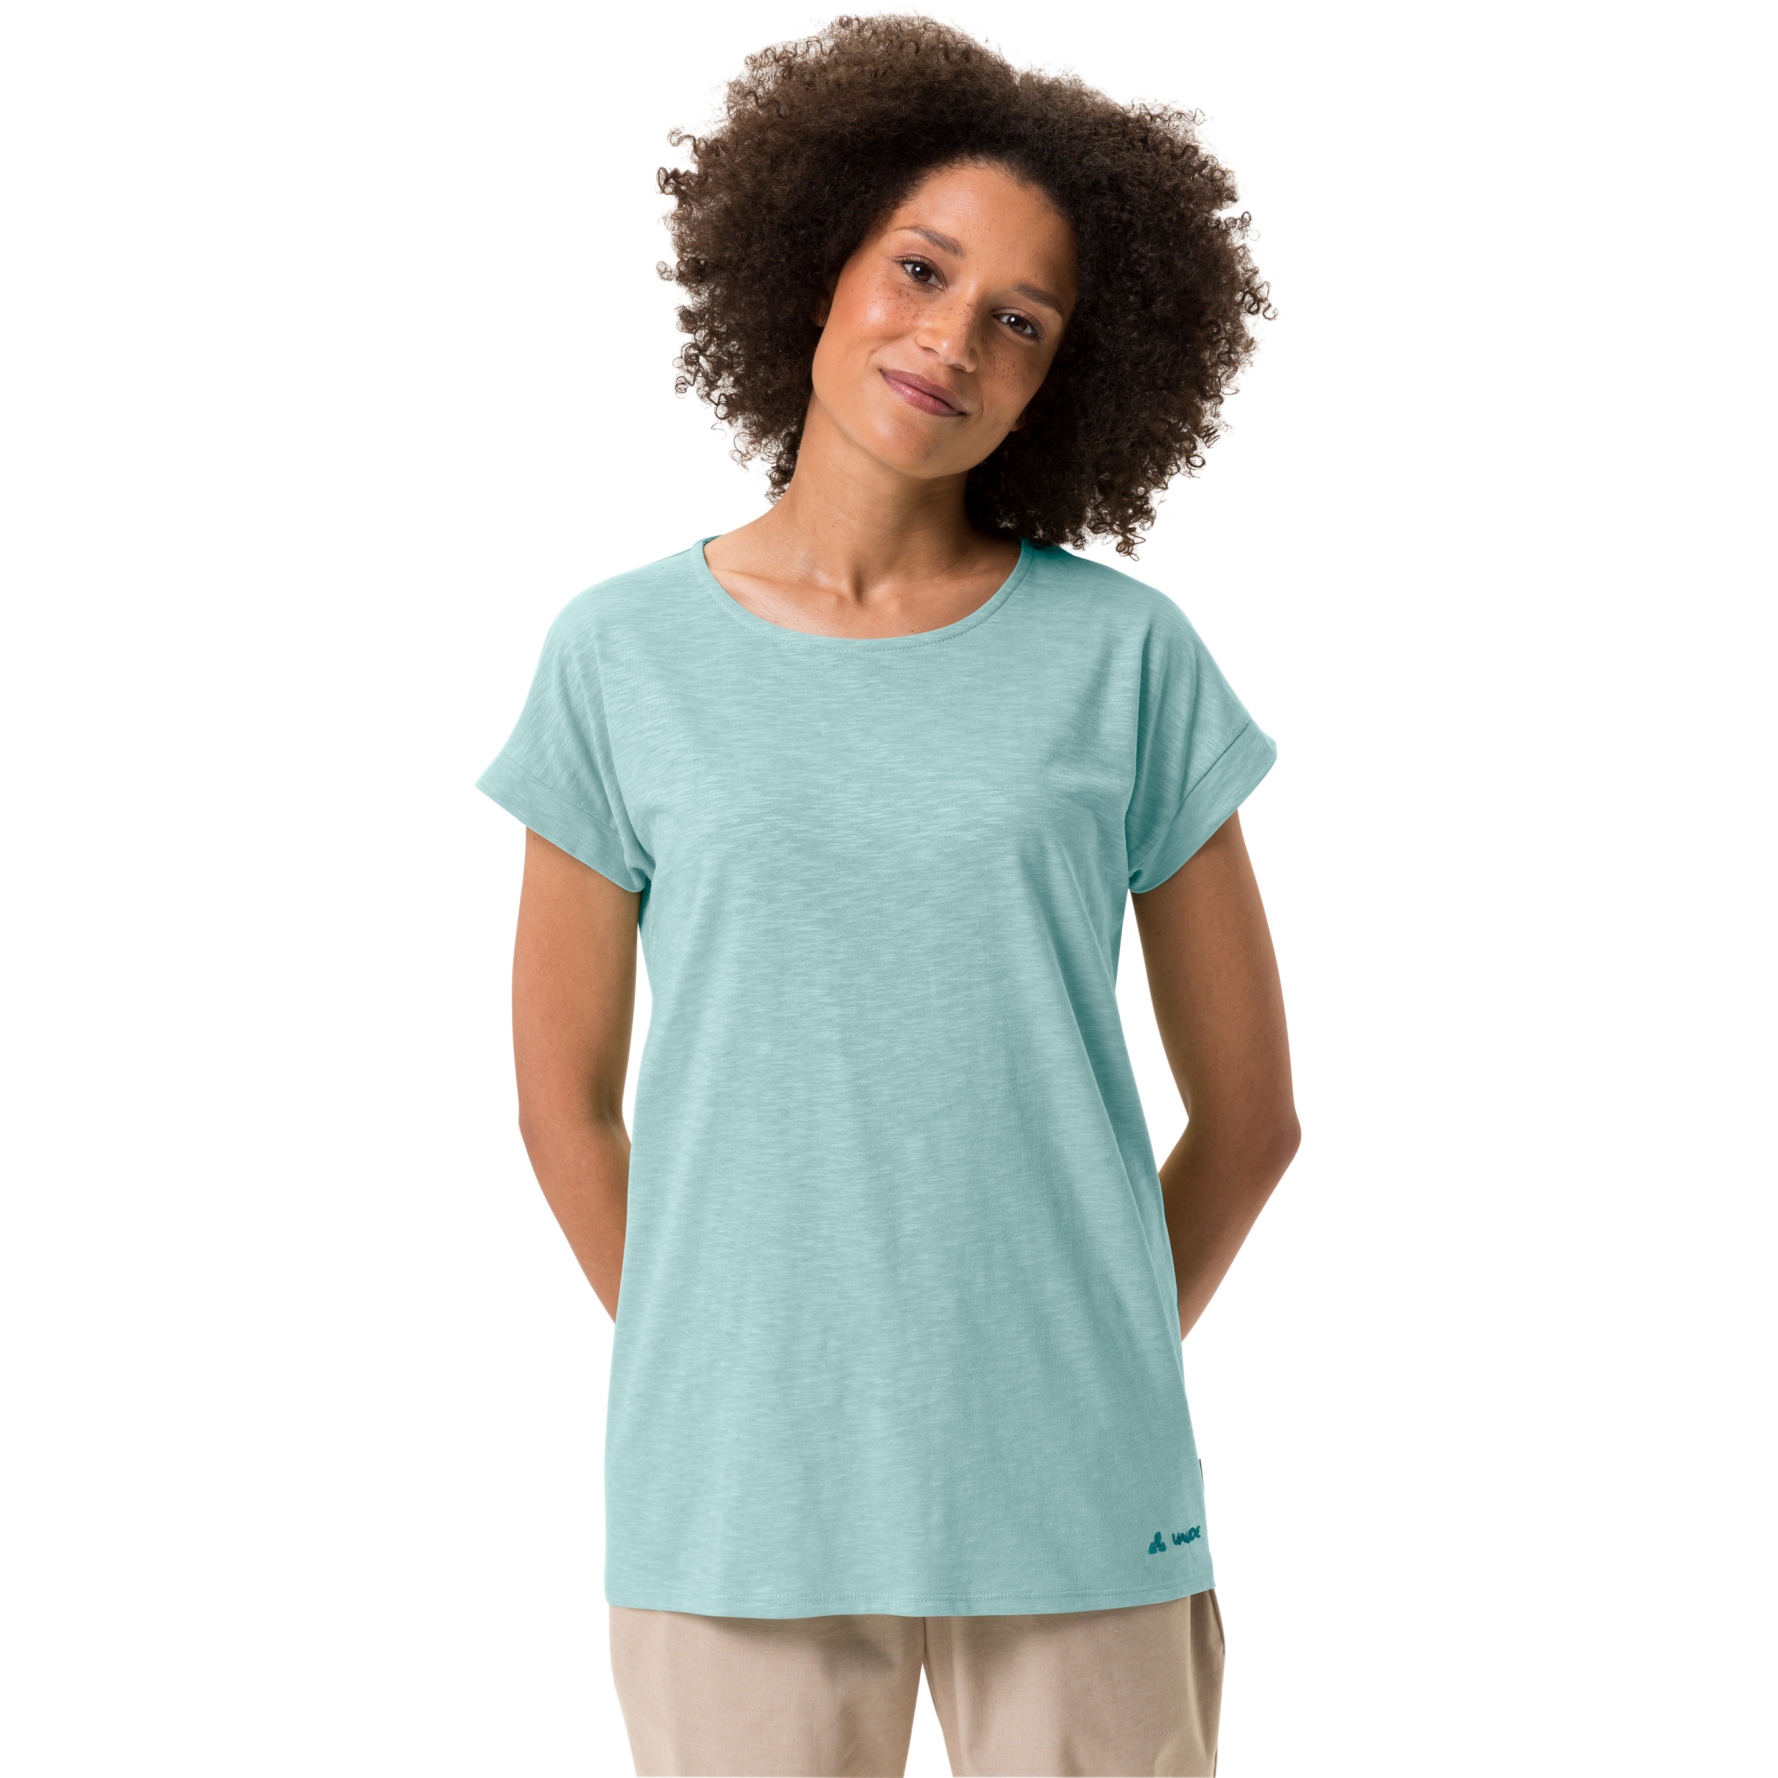 Produktbild von Vaude Moja IV T-Shirt Damen - glacier